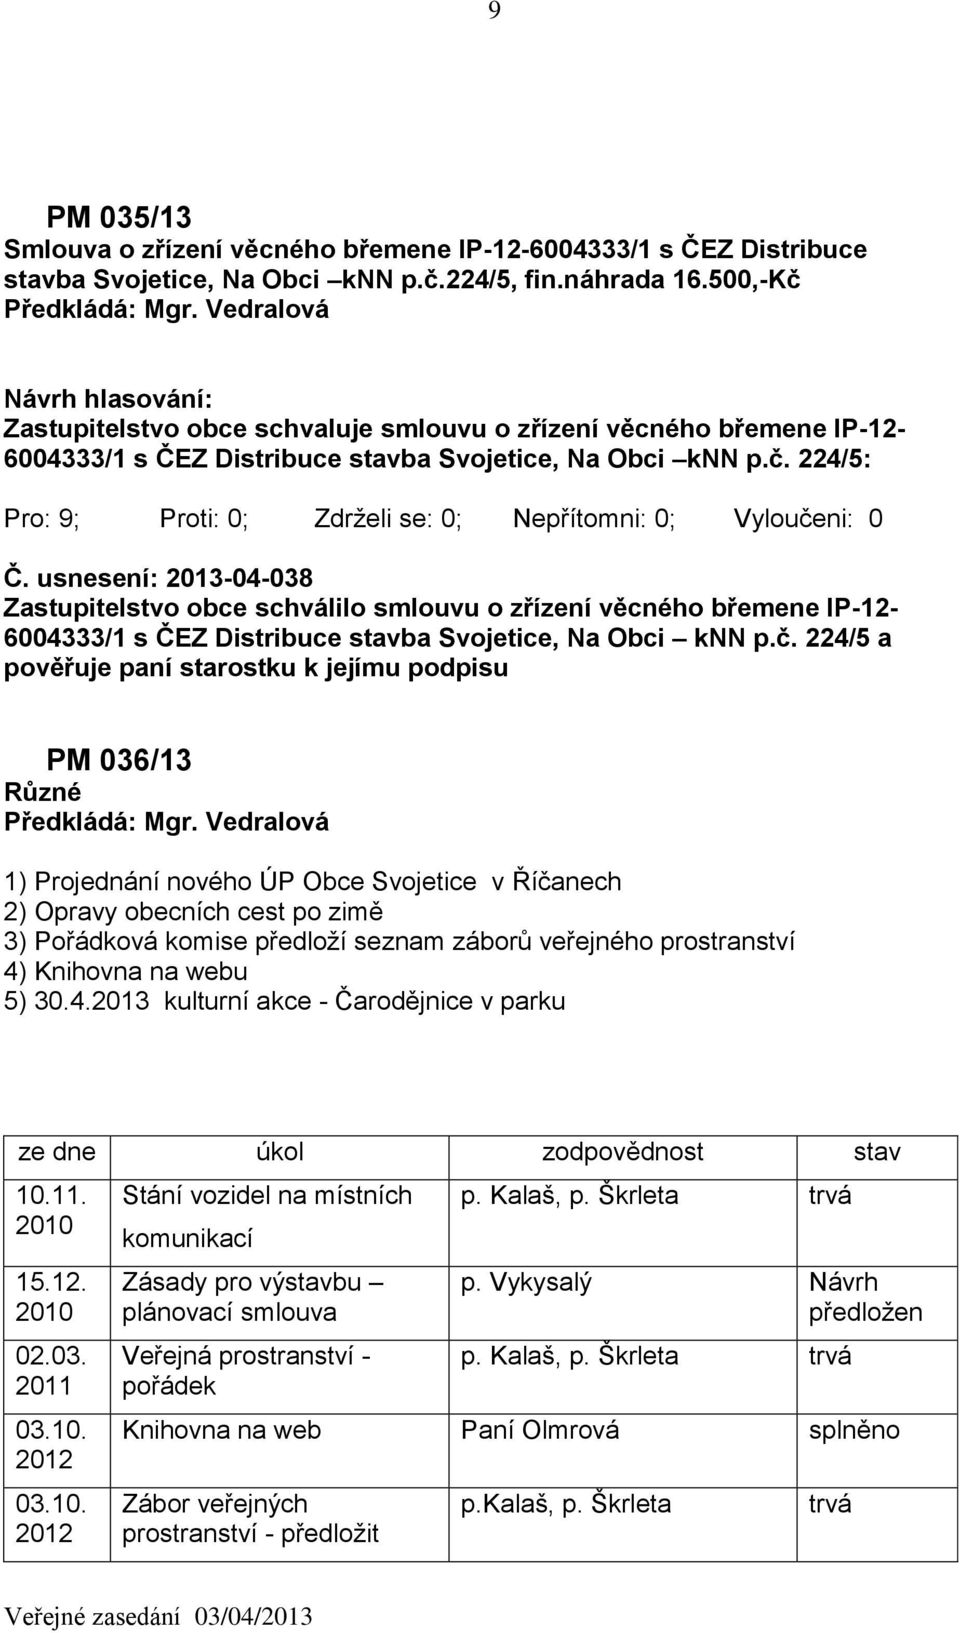 usnesení: 2013-04-038 Zastupitelstvo obce schválilo smlouvu o zřízení věcného břemene IP-12-6004333/1 s ČEZ Distribuce stavba Svojetice, Na Obci knn p.č.